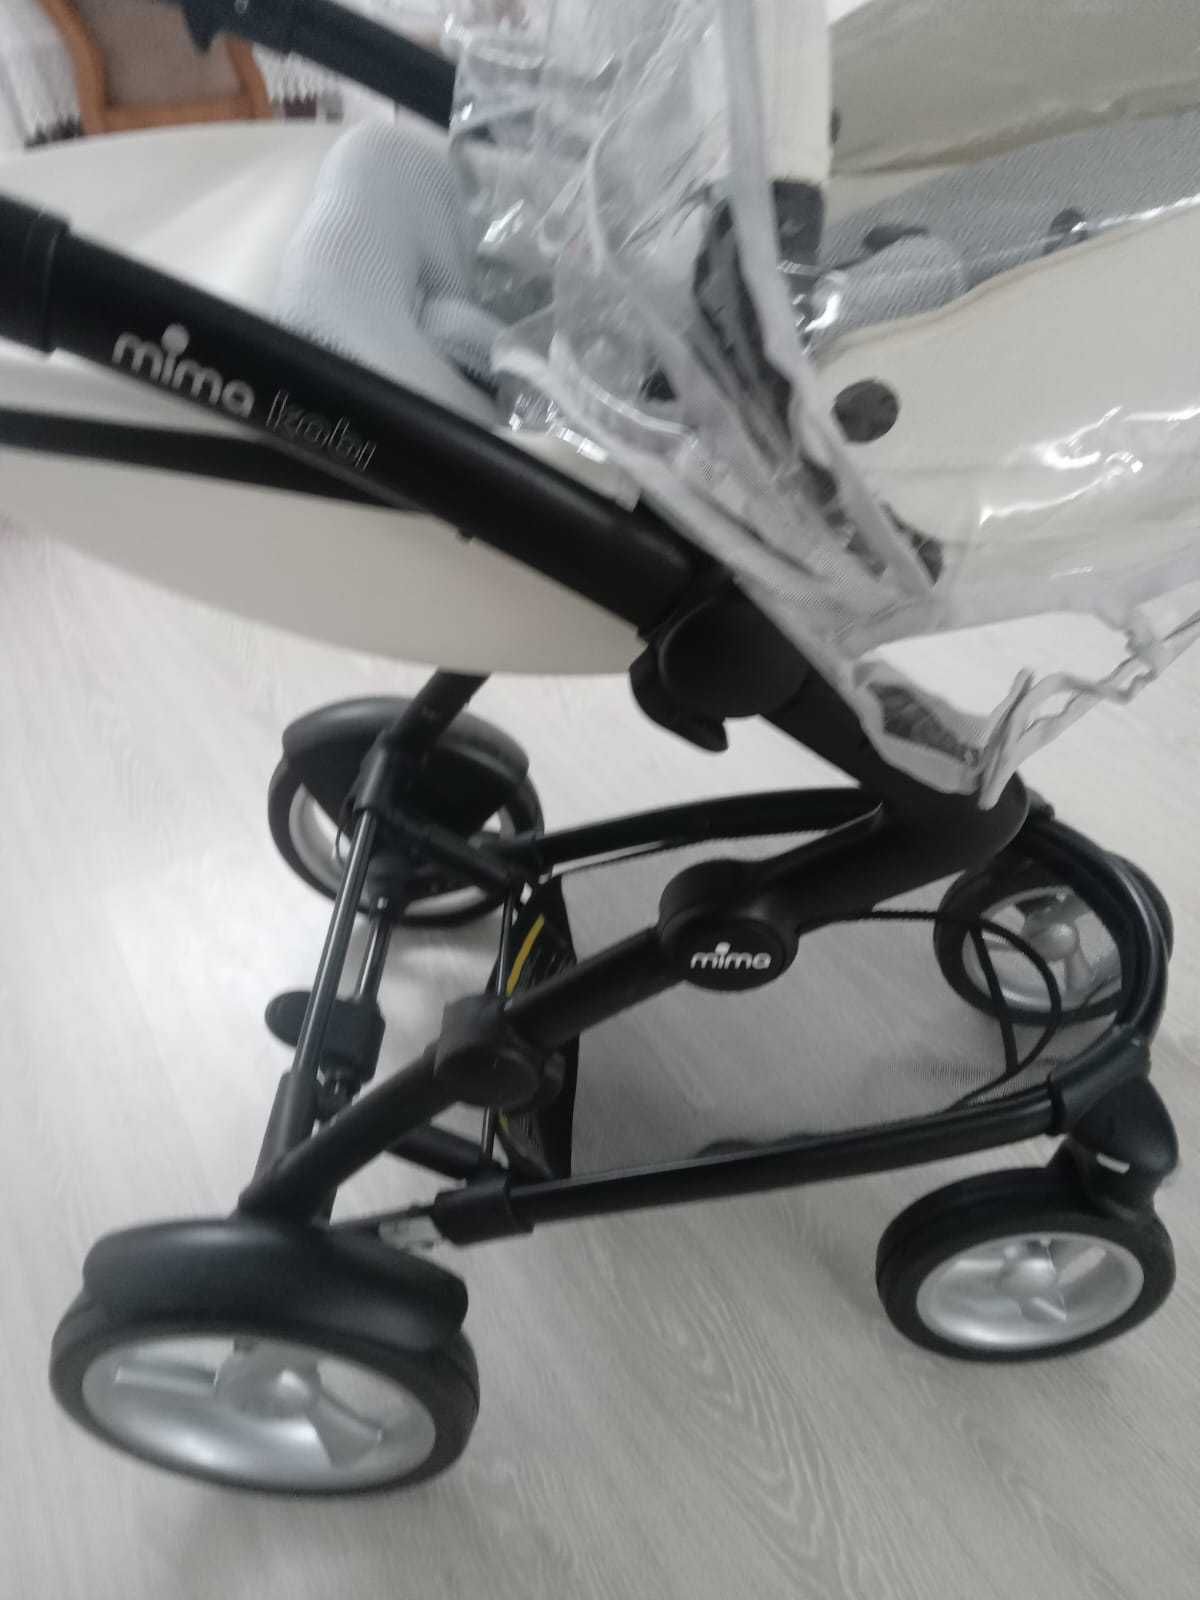 Продам брендовую детскую коляску в отличном сотоянии